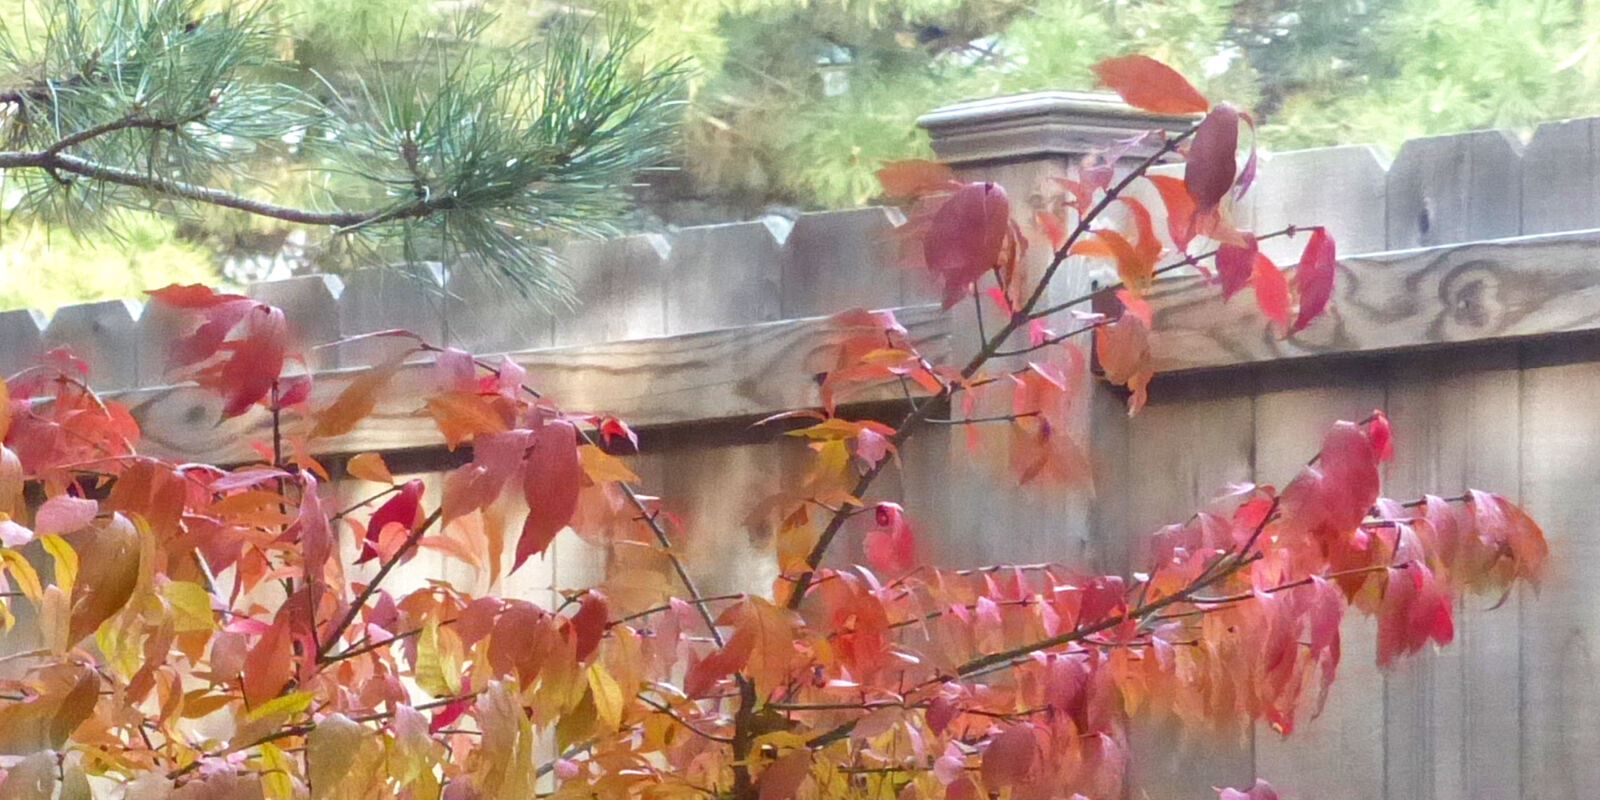 Leica V-Lux 4 sample photo. Fall, foliage, fall, trees photography